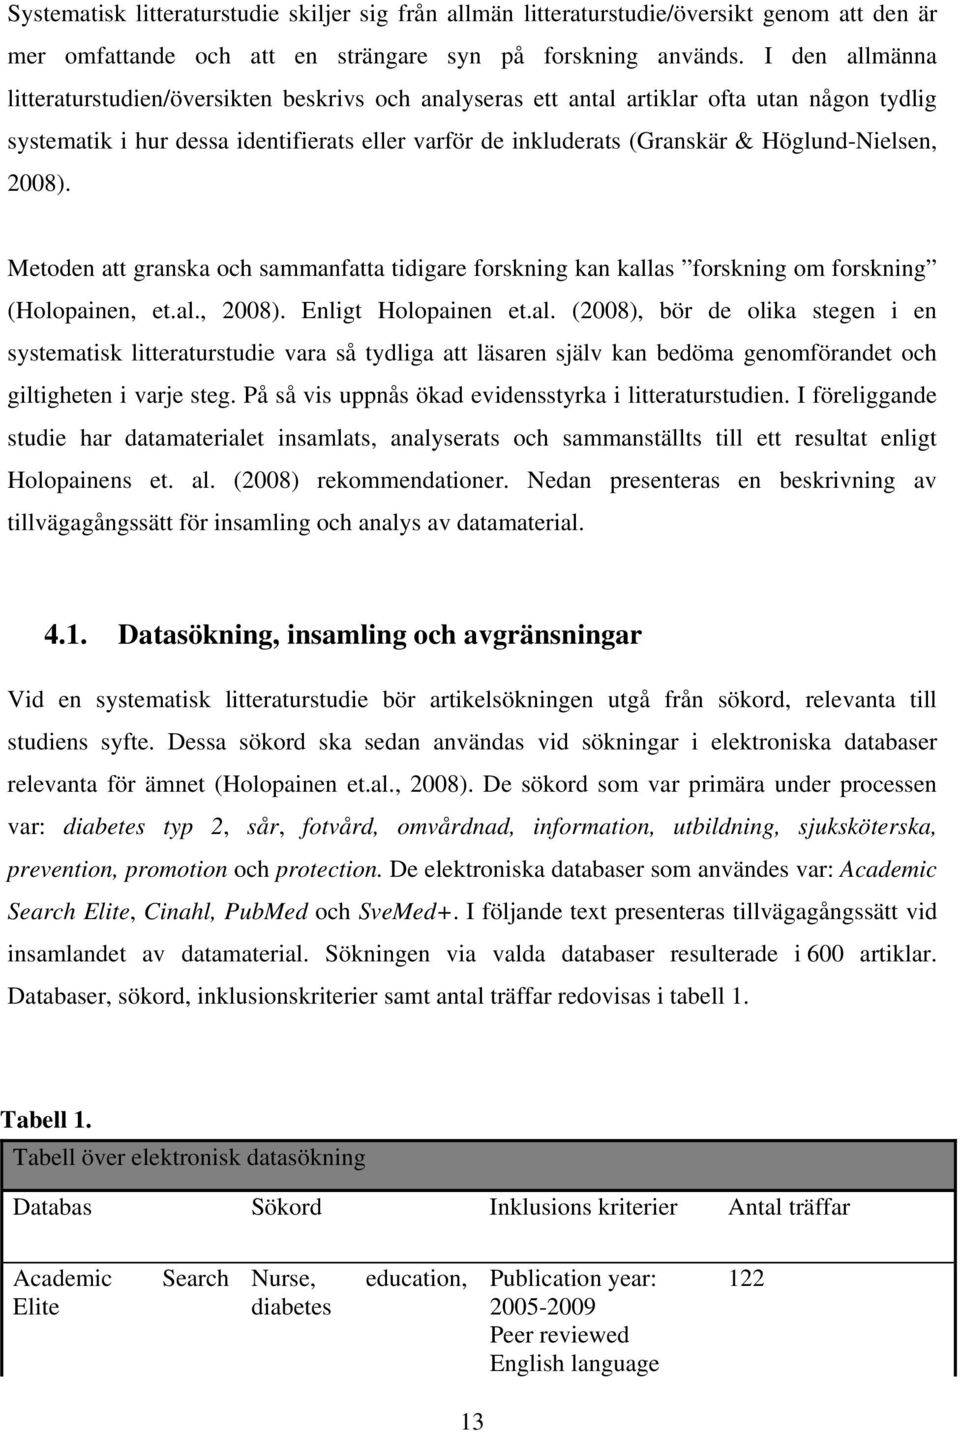 Höglund-Nielsen, 2008). Metoden att granska och sammanfatta tidigare forskning kan kall